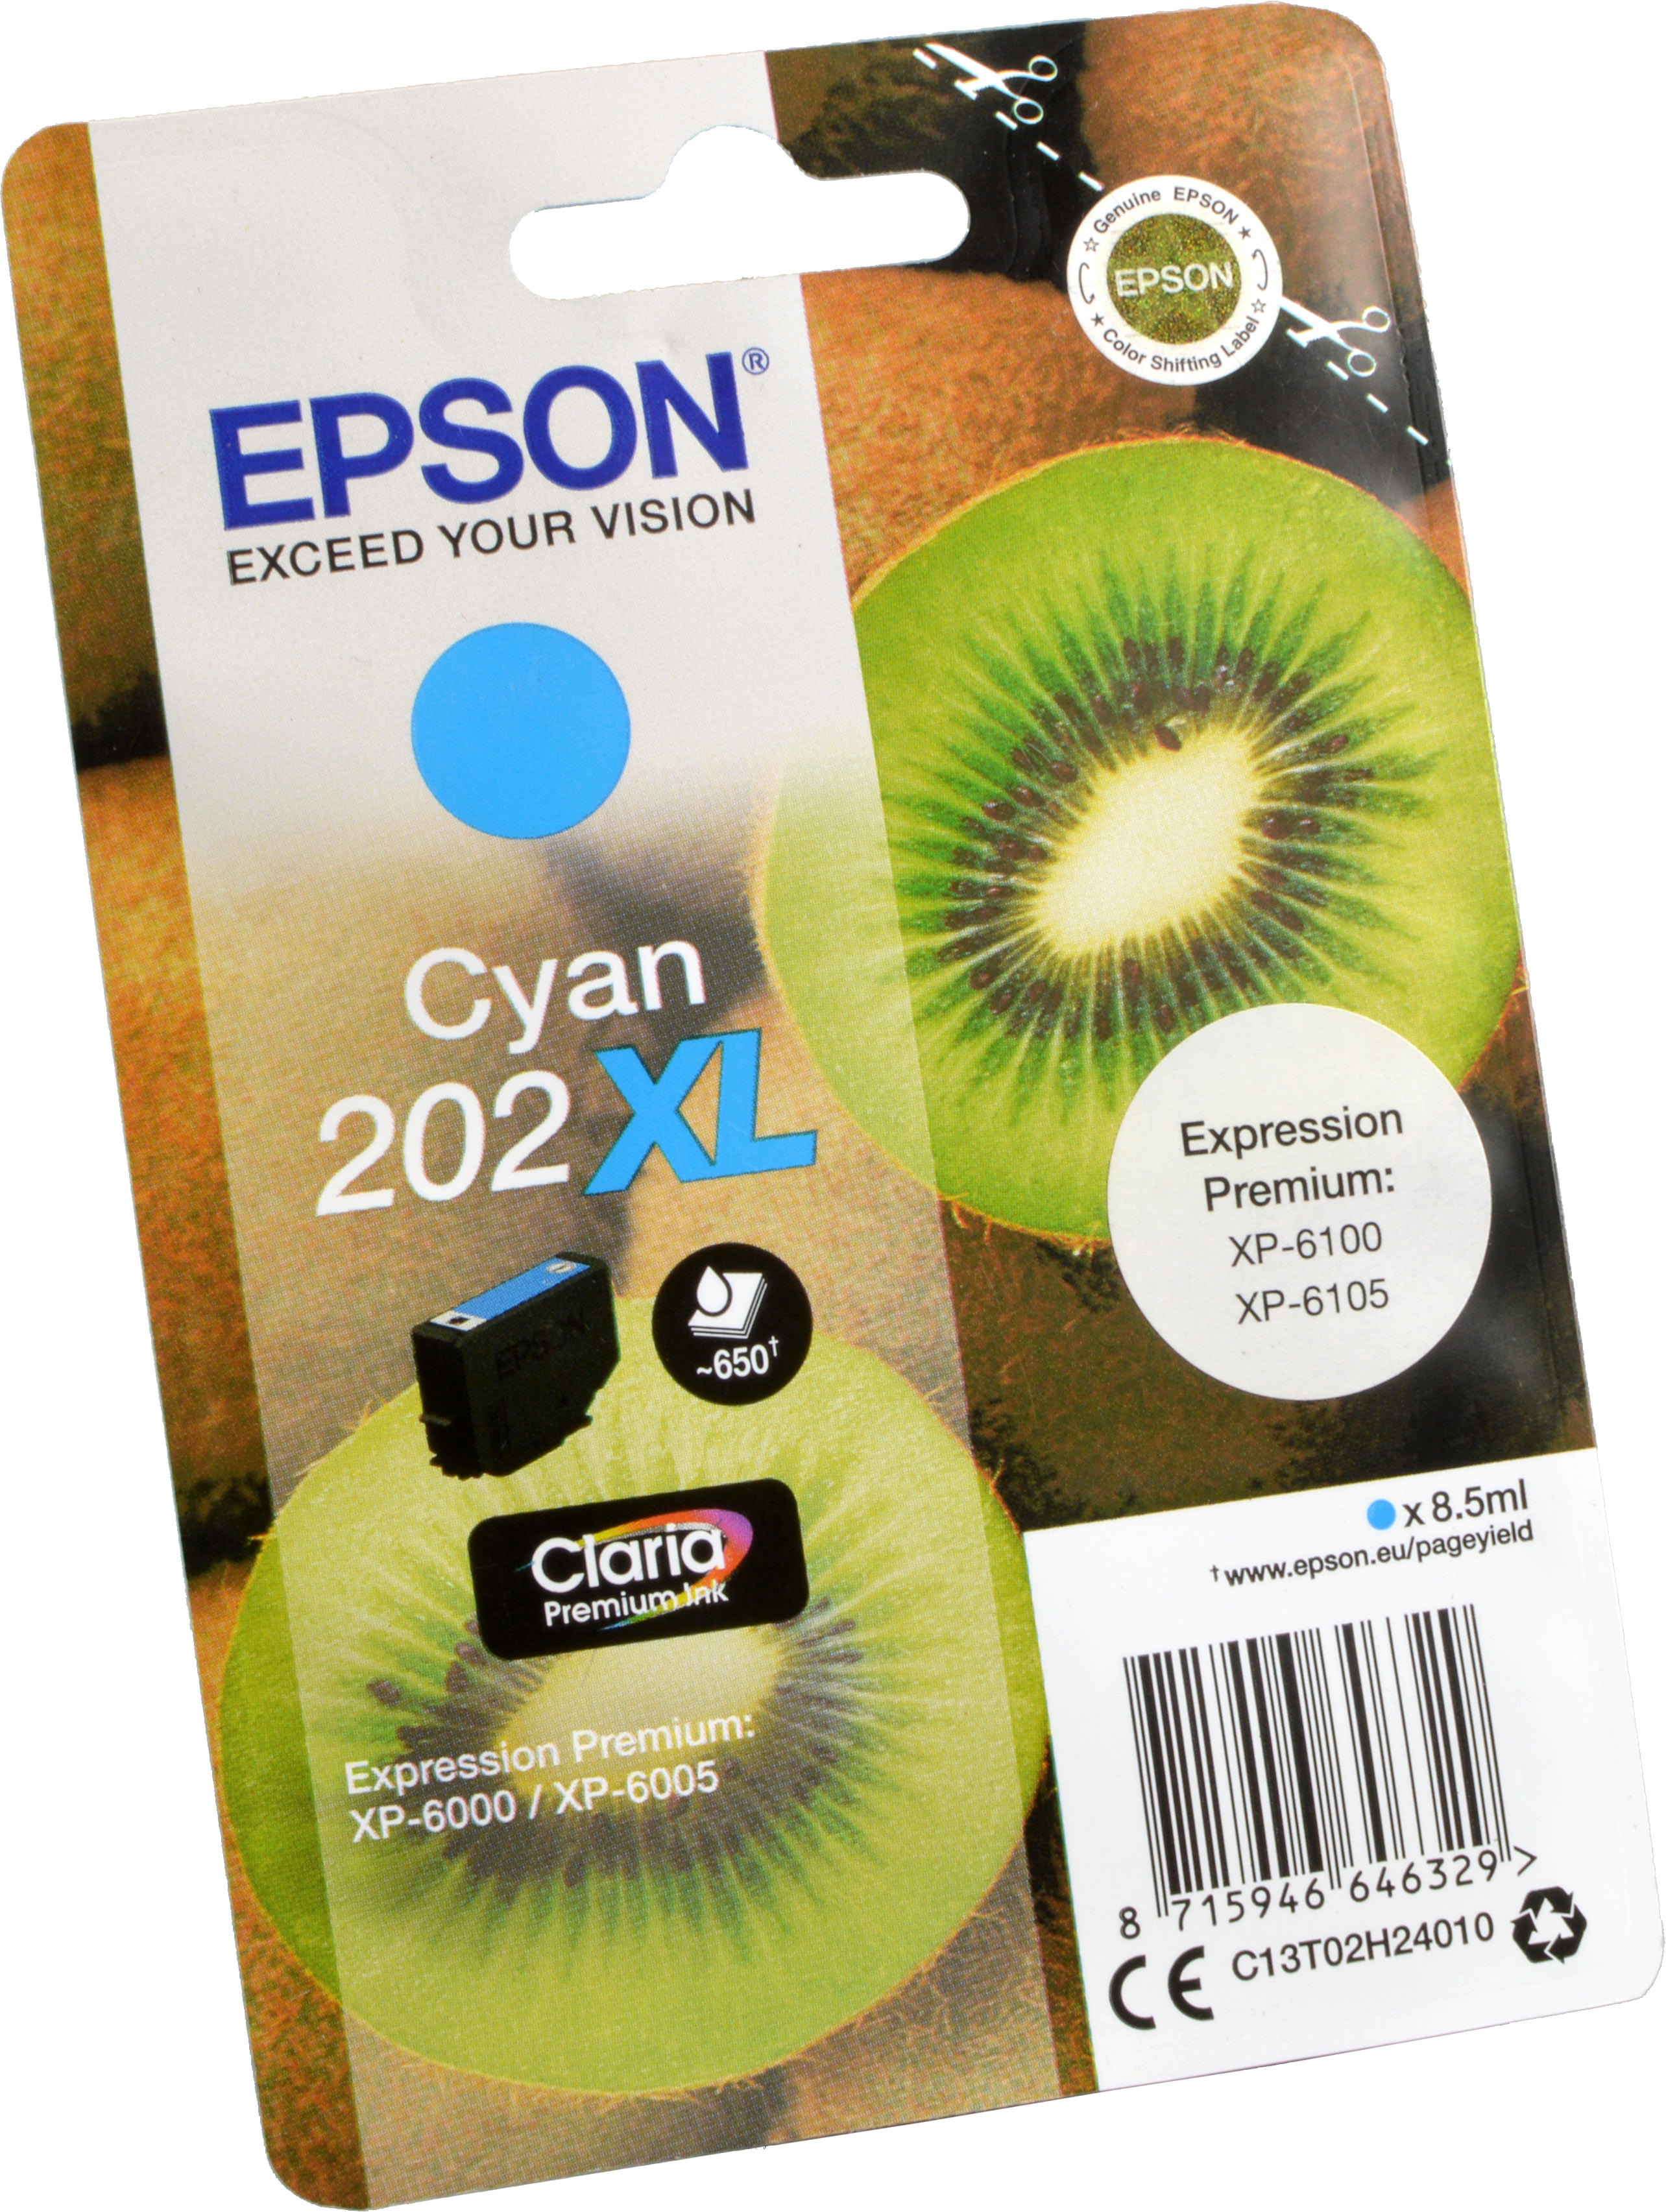 Epson Tinte C13T02H24010  Cyan 202XL  cyan